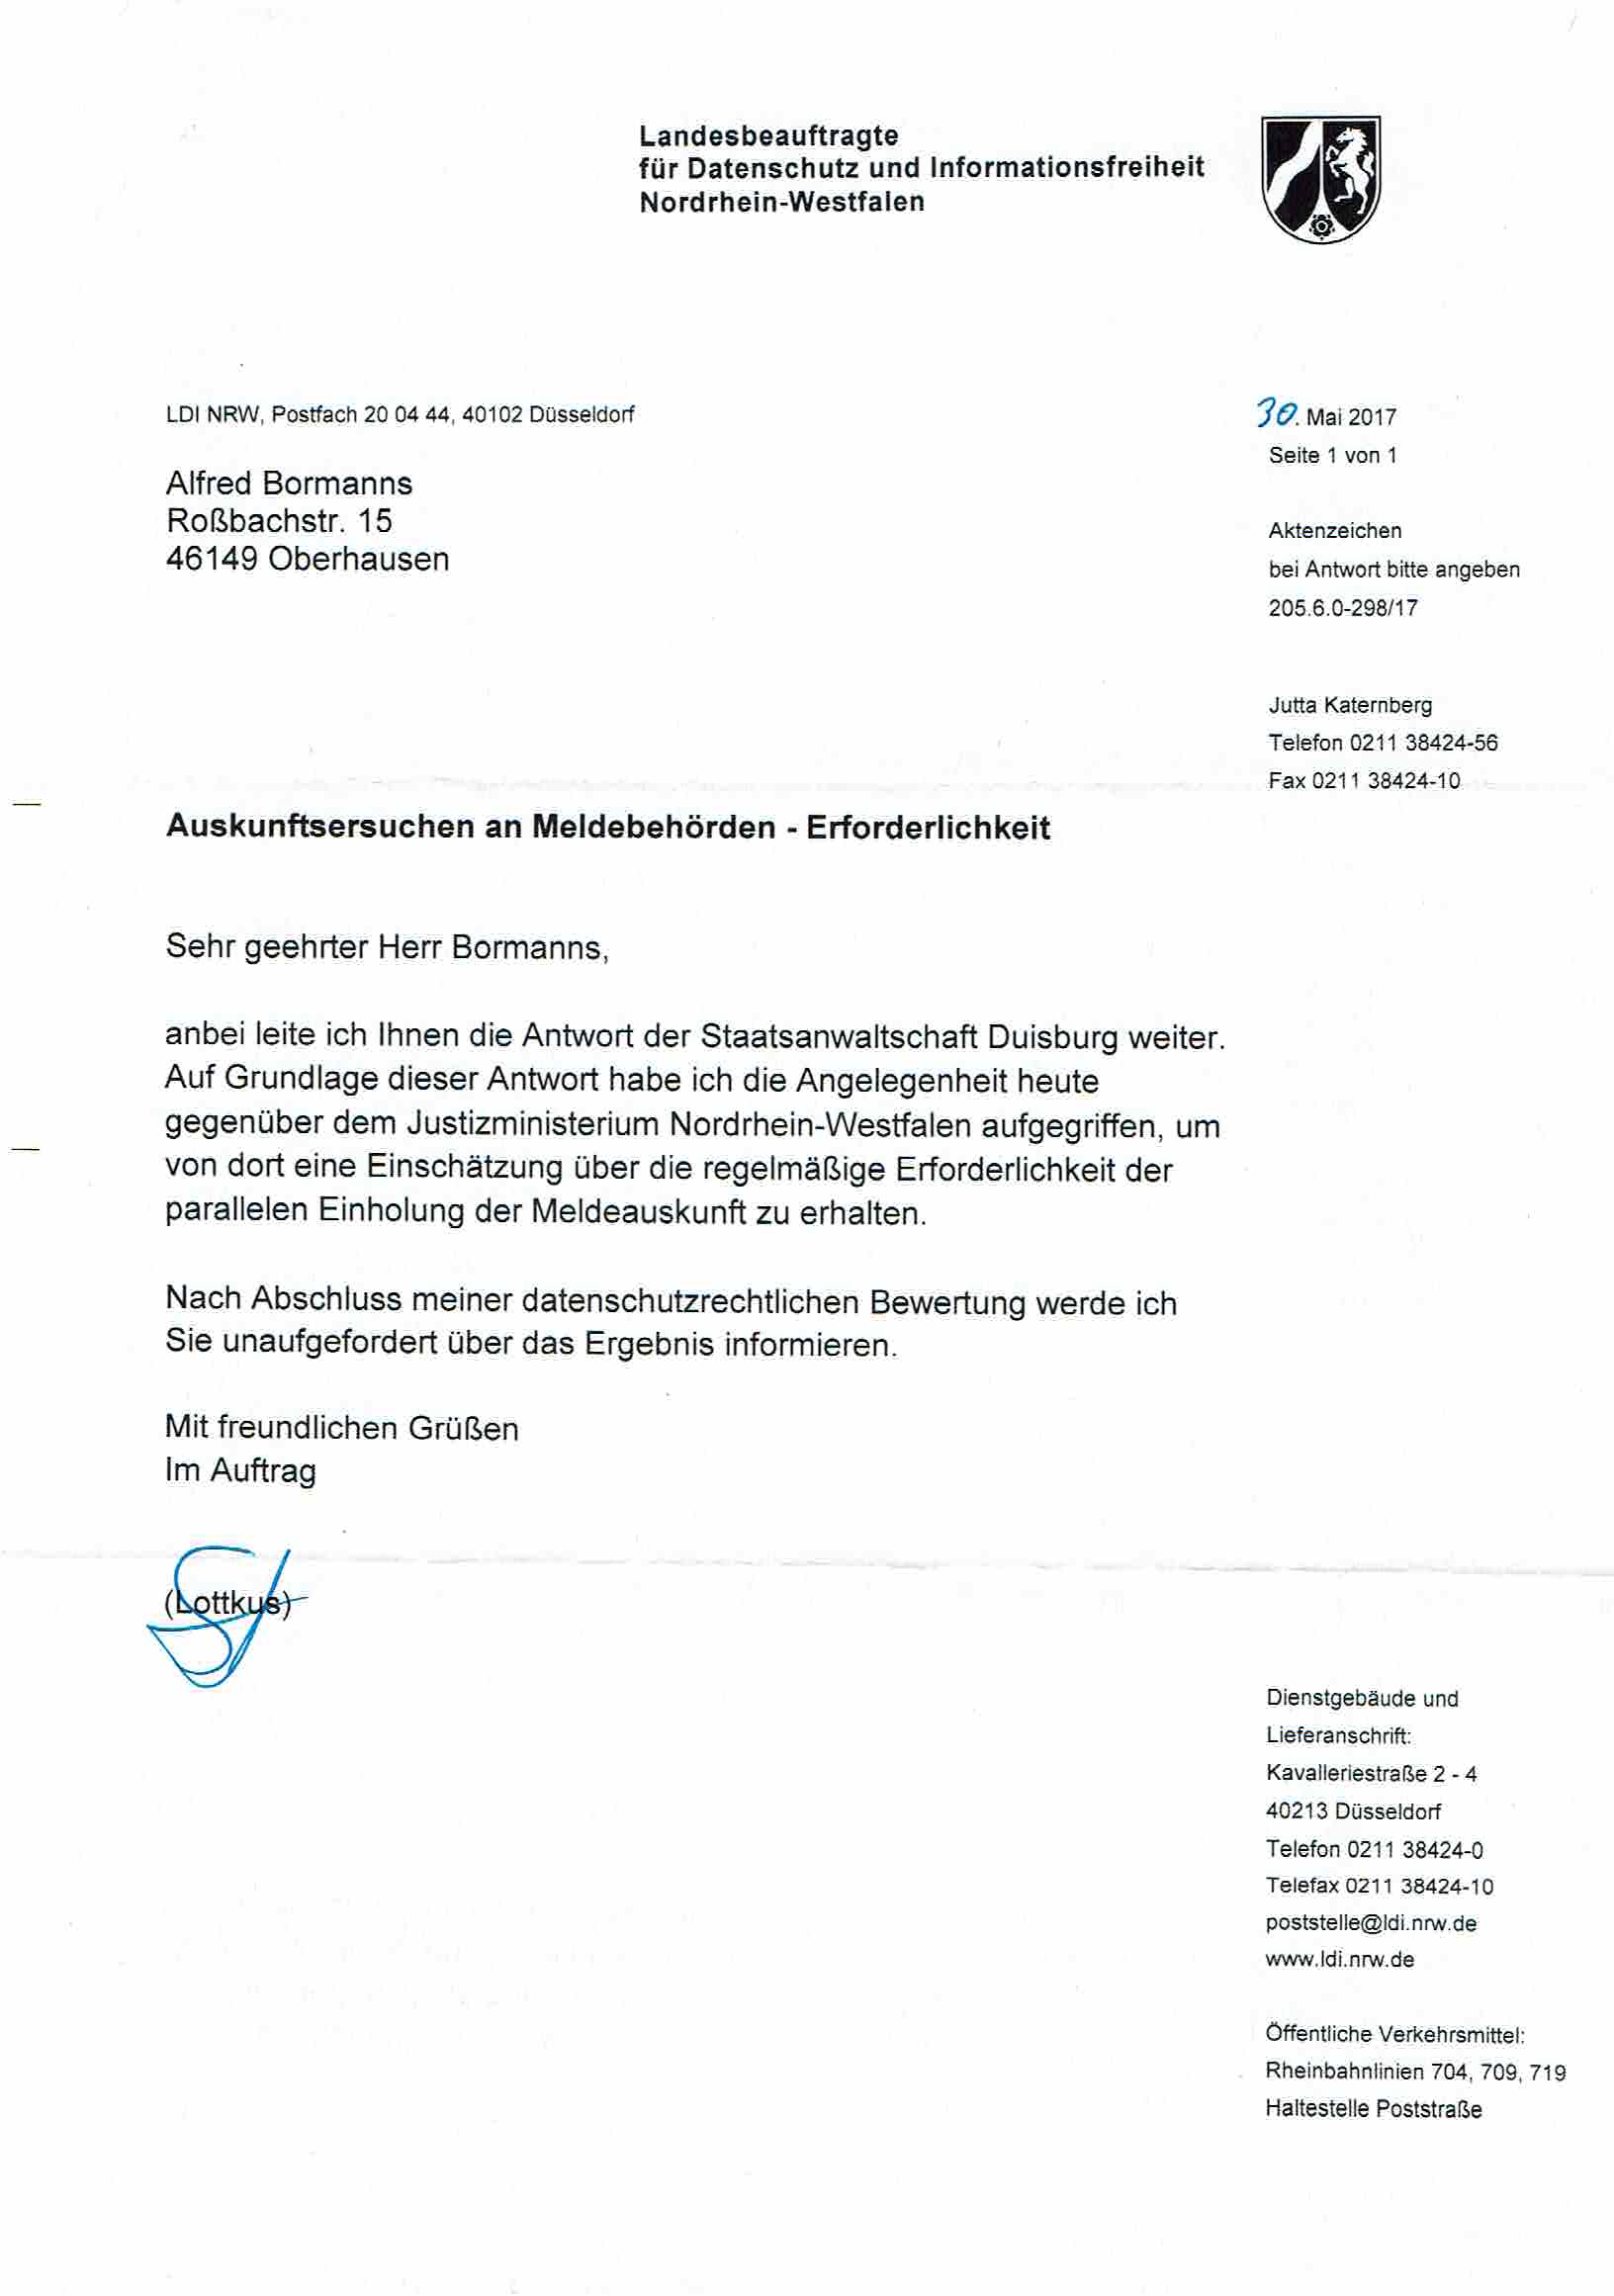 Nachricht der Landesbeauftragen für Datenschutz und Informationsfreiheit Nordrhein-Westfalen vom 30.05.2017